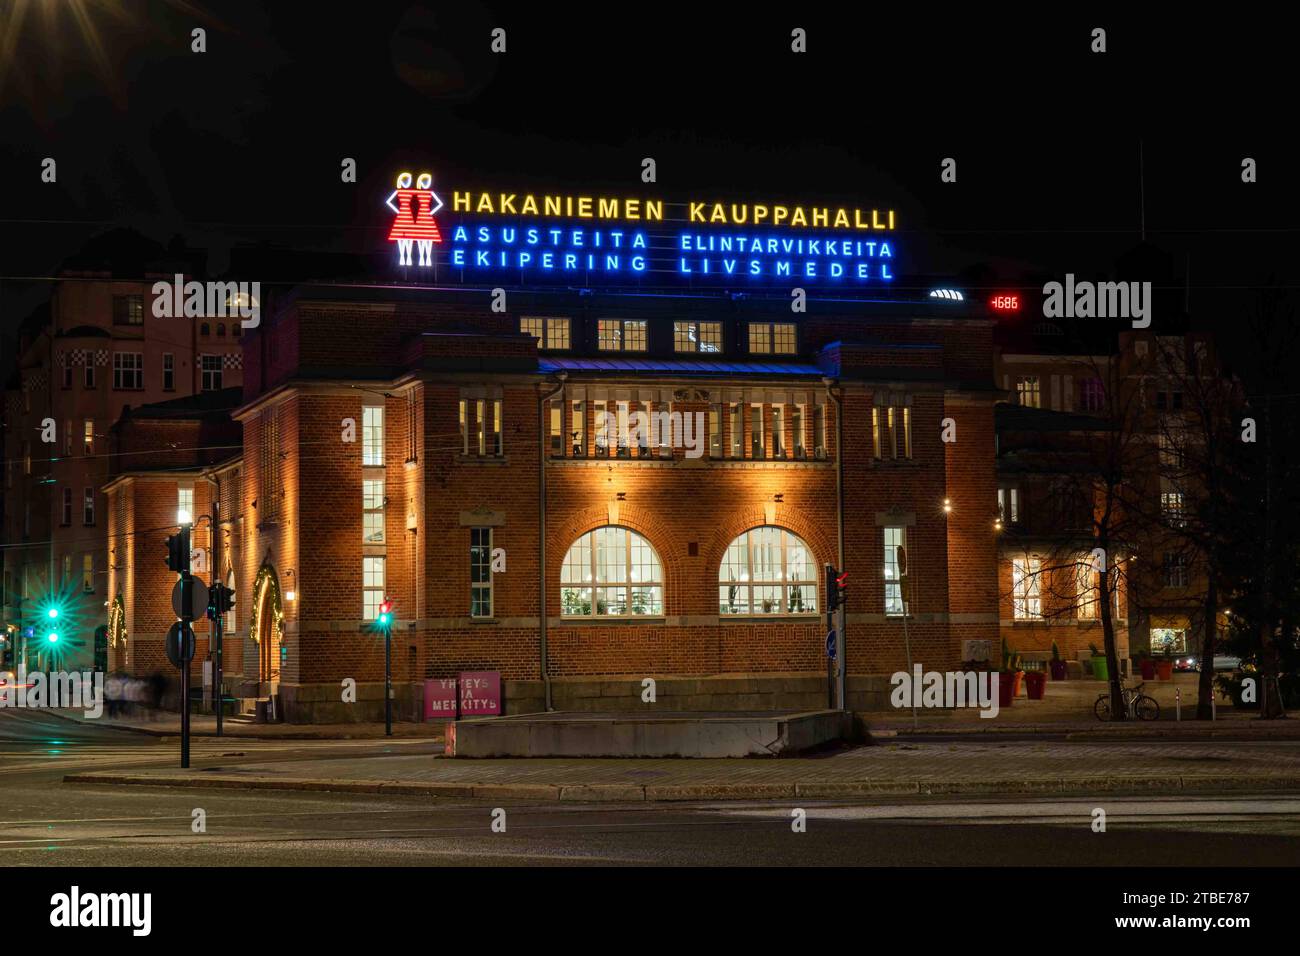 Hakaniemen kauppahalli ou Hakaniemi Market Hall avec des néons après la tombée de la nuit à Helsinki, Finlande Banque D'Images